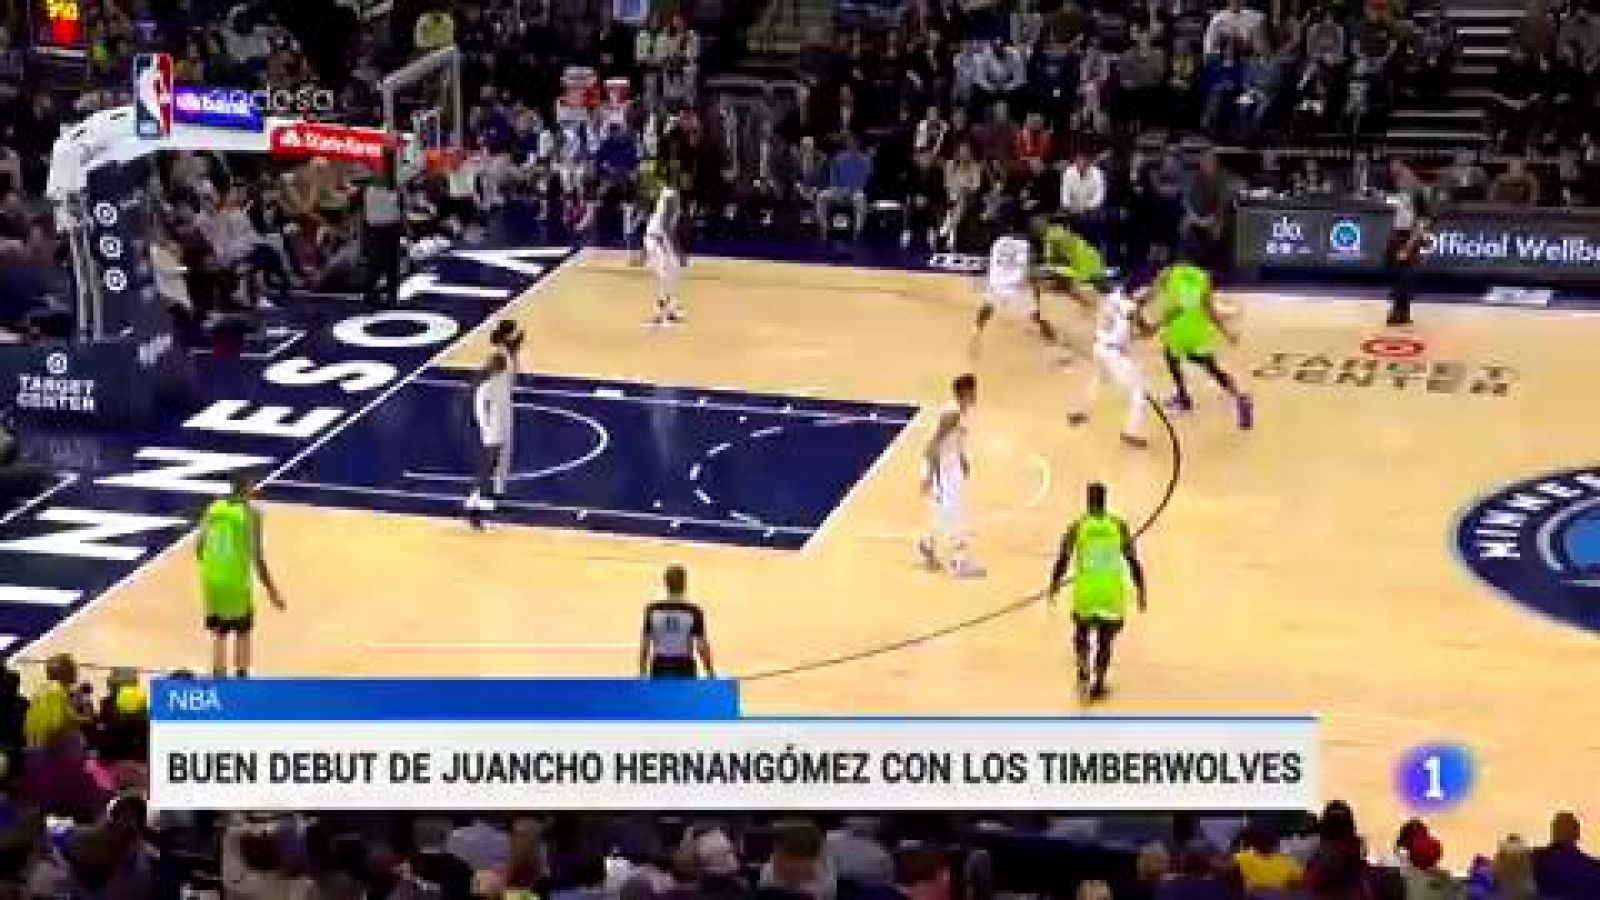 NBA | Juancho Hernángomez debuta con brillantez con los Timberwolves - rtve.es